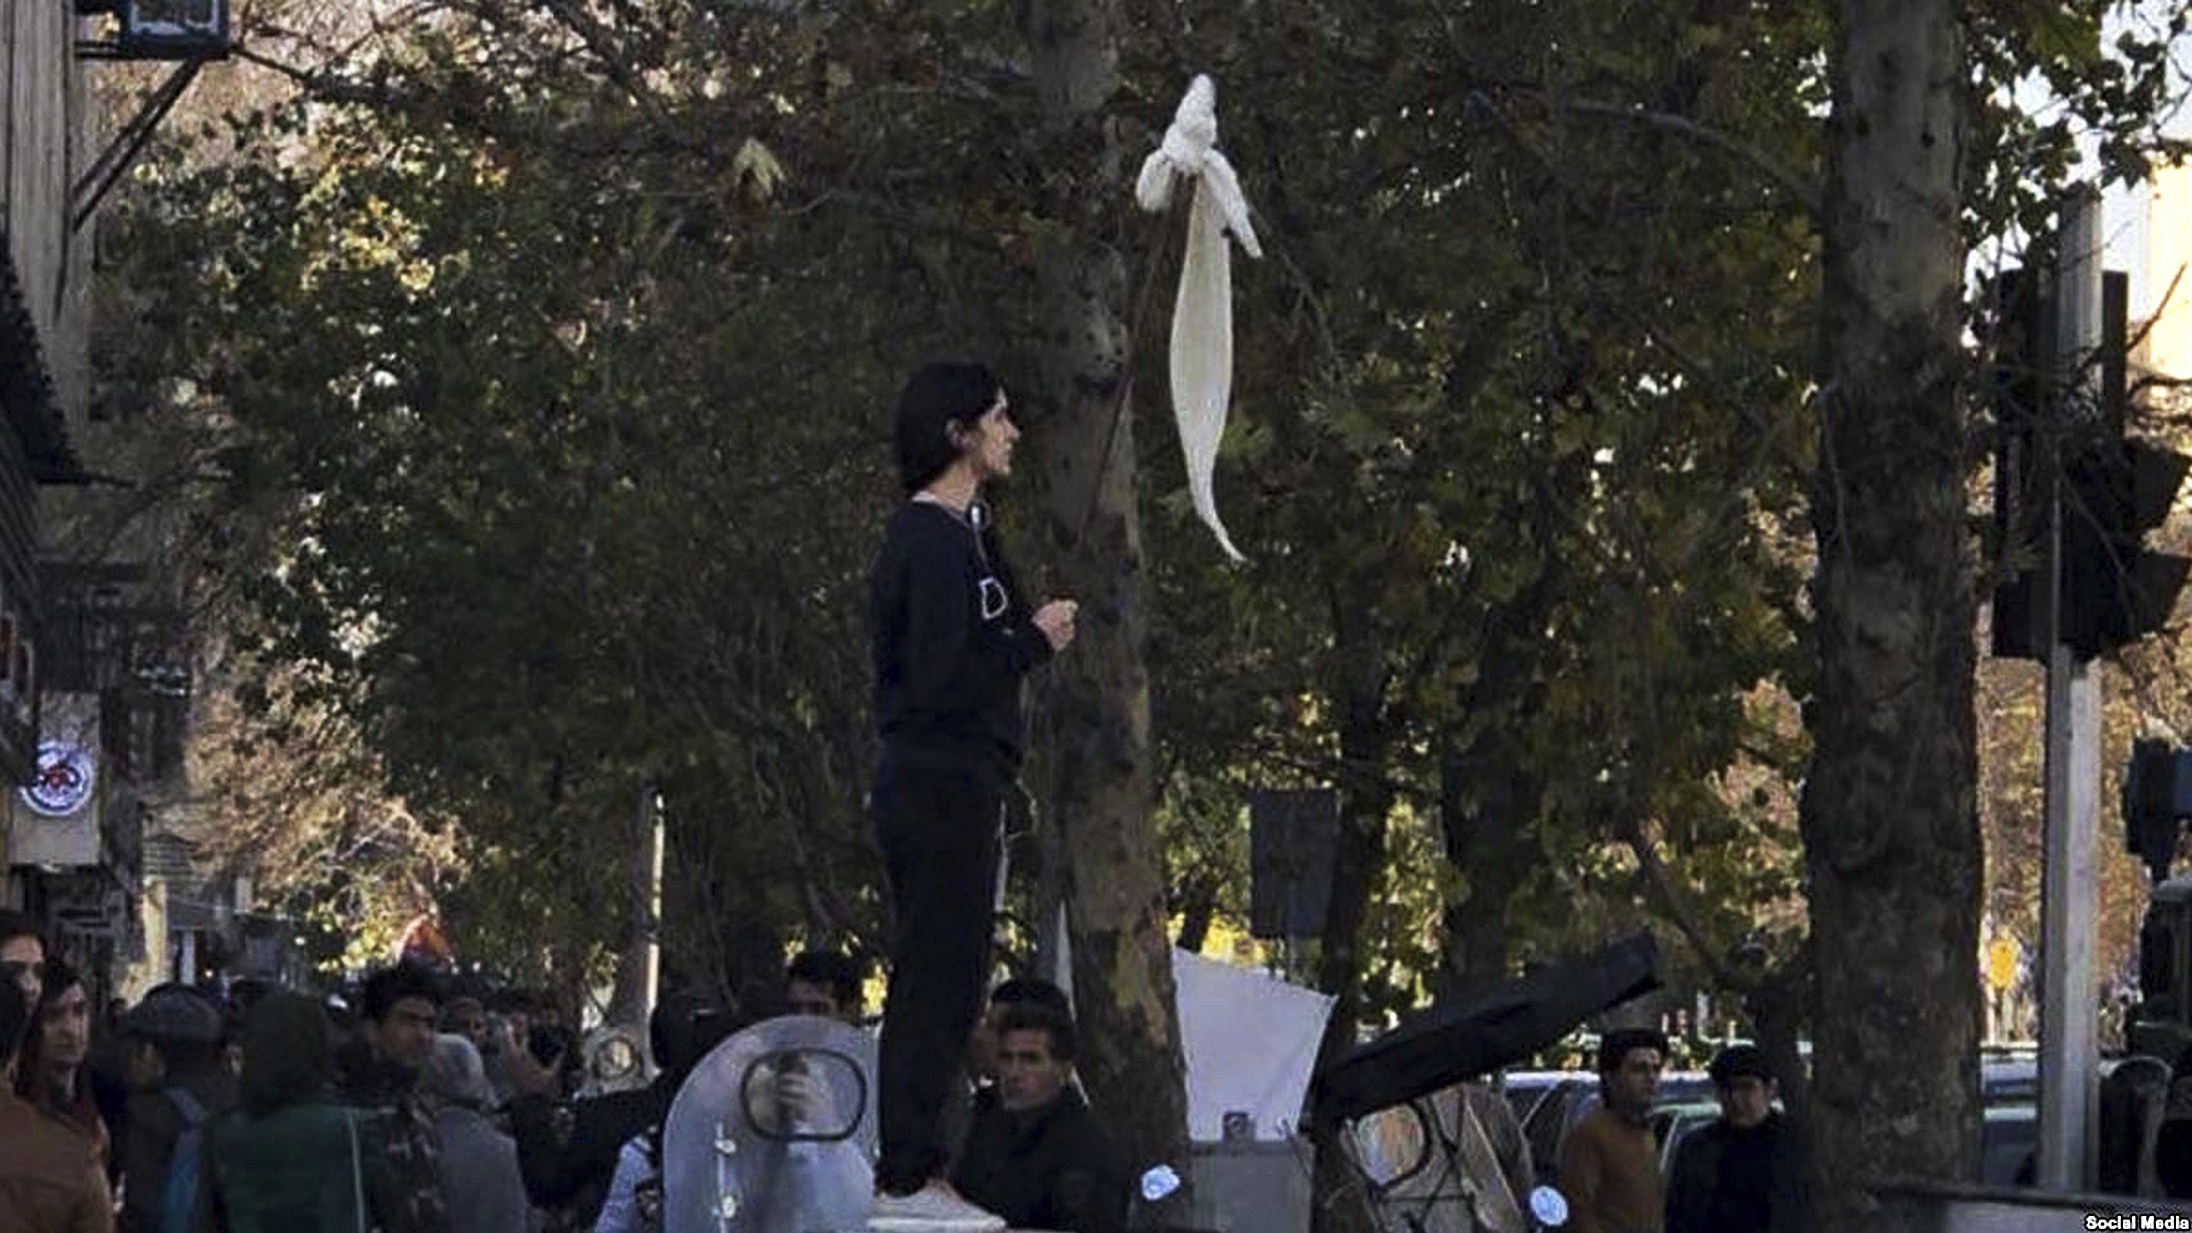 L’Iranienne Vida Movahed, protestant contre le port obligatoire du hijab dans une rue très fréquentée de Téhéran, a provoqué une vague de mobilisation contre l’obligation du voile (AP)